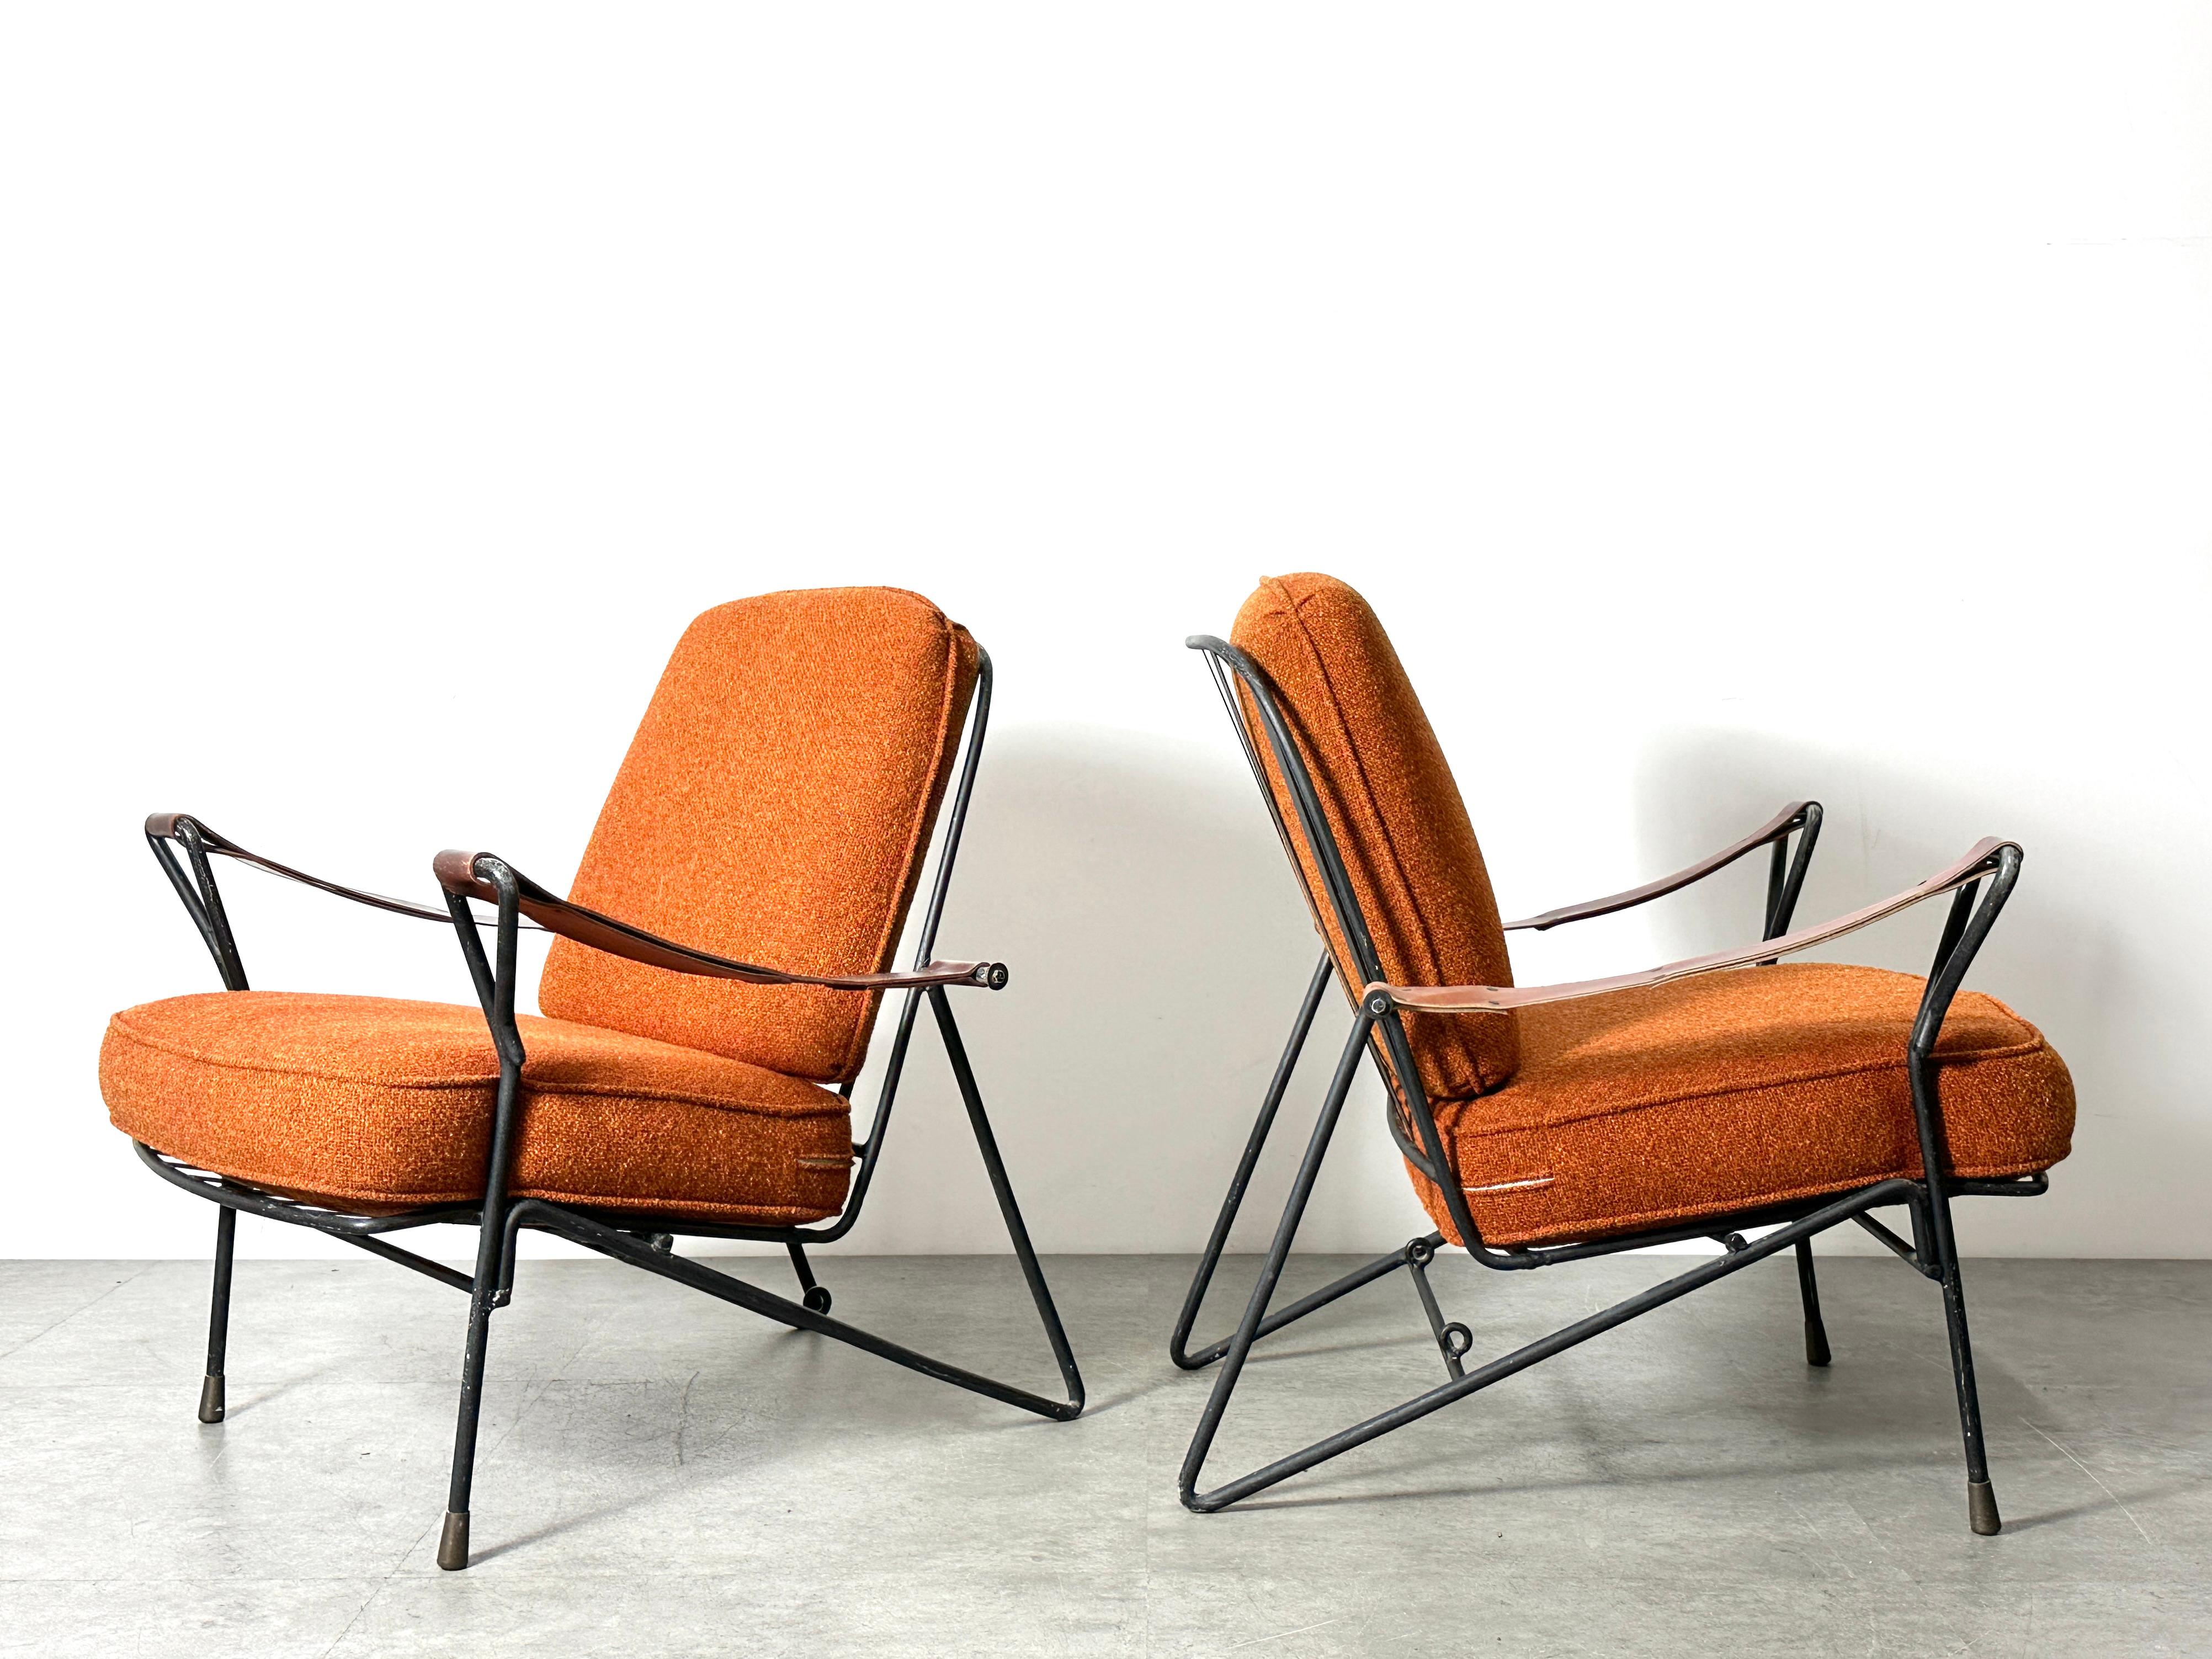 Paire de chaises longues modernistes mexicaines circa 1950
Piétements en fer émaillé / accoudoirs en sangle de cuir / pieds coiffés de laiton.
Coussins libres en orange rouille